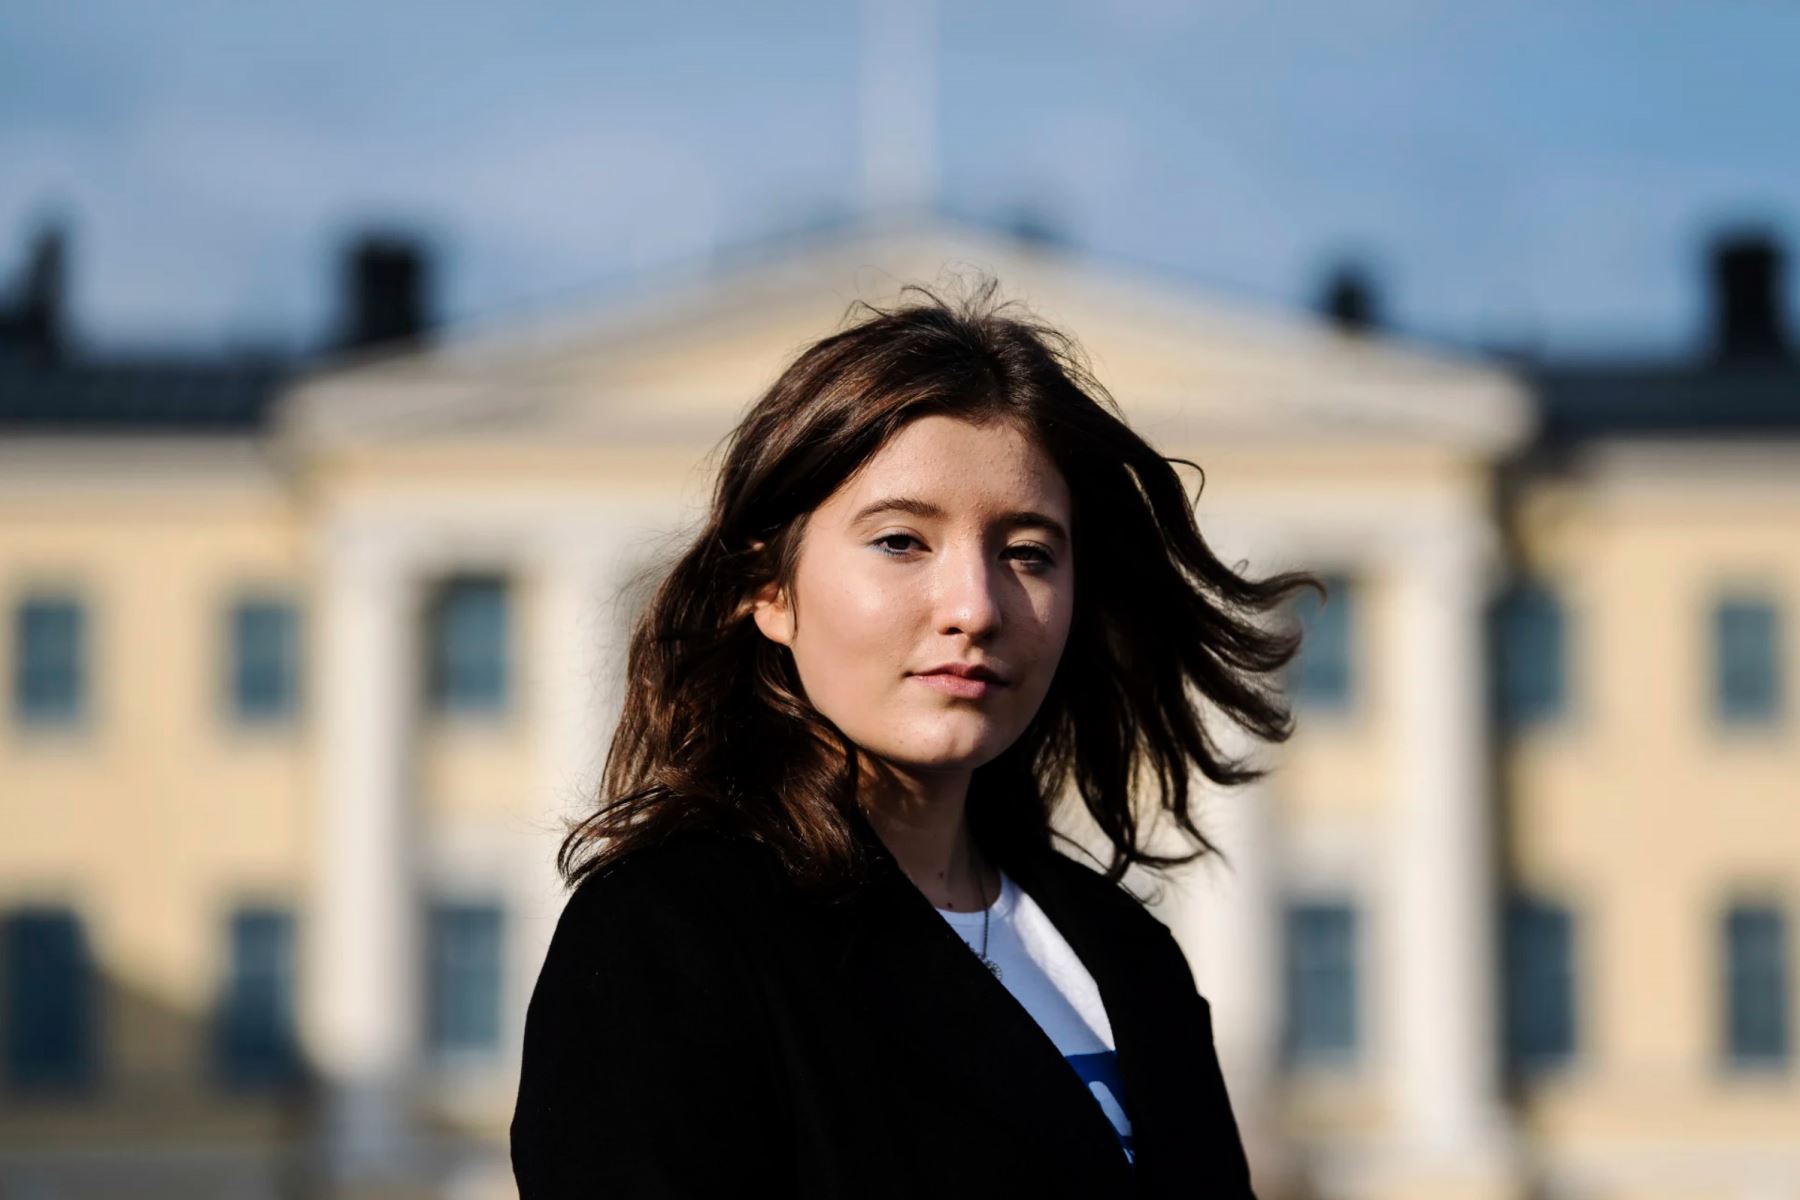 Adolescente de 16 años se convierte en presidenta de Finlandia por un día